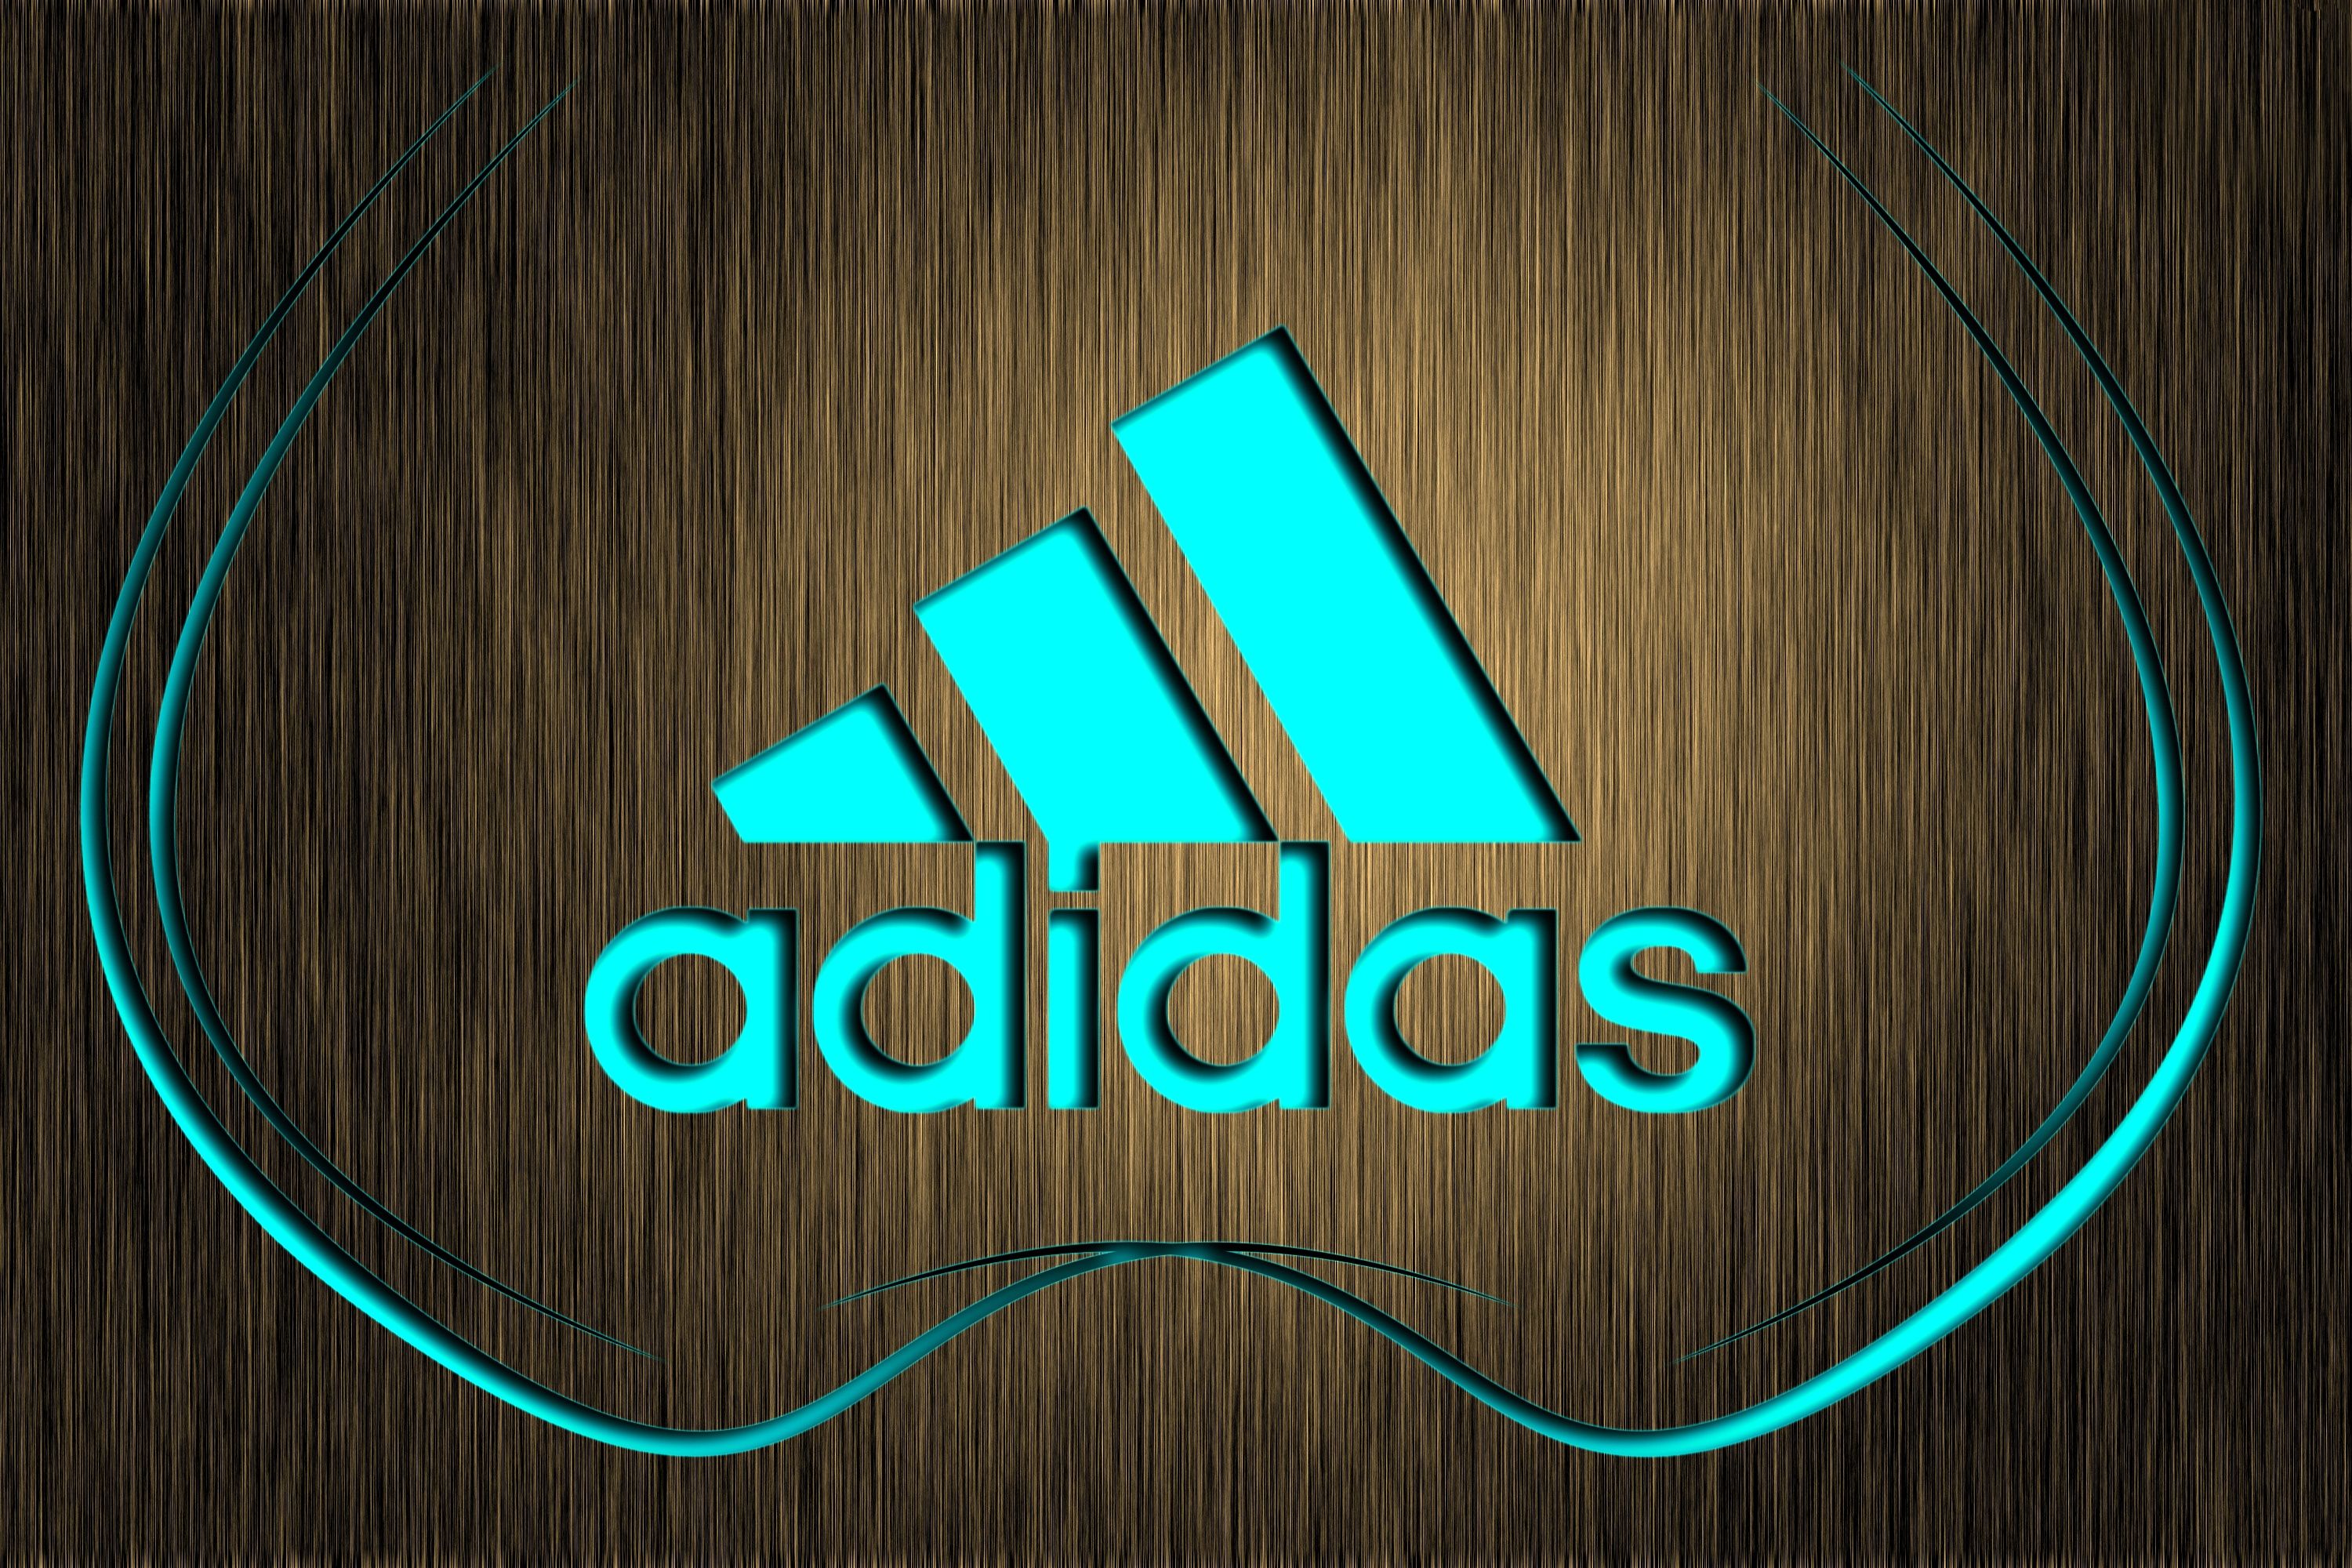 Adidas Image Free Download